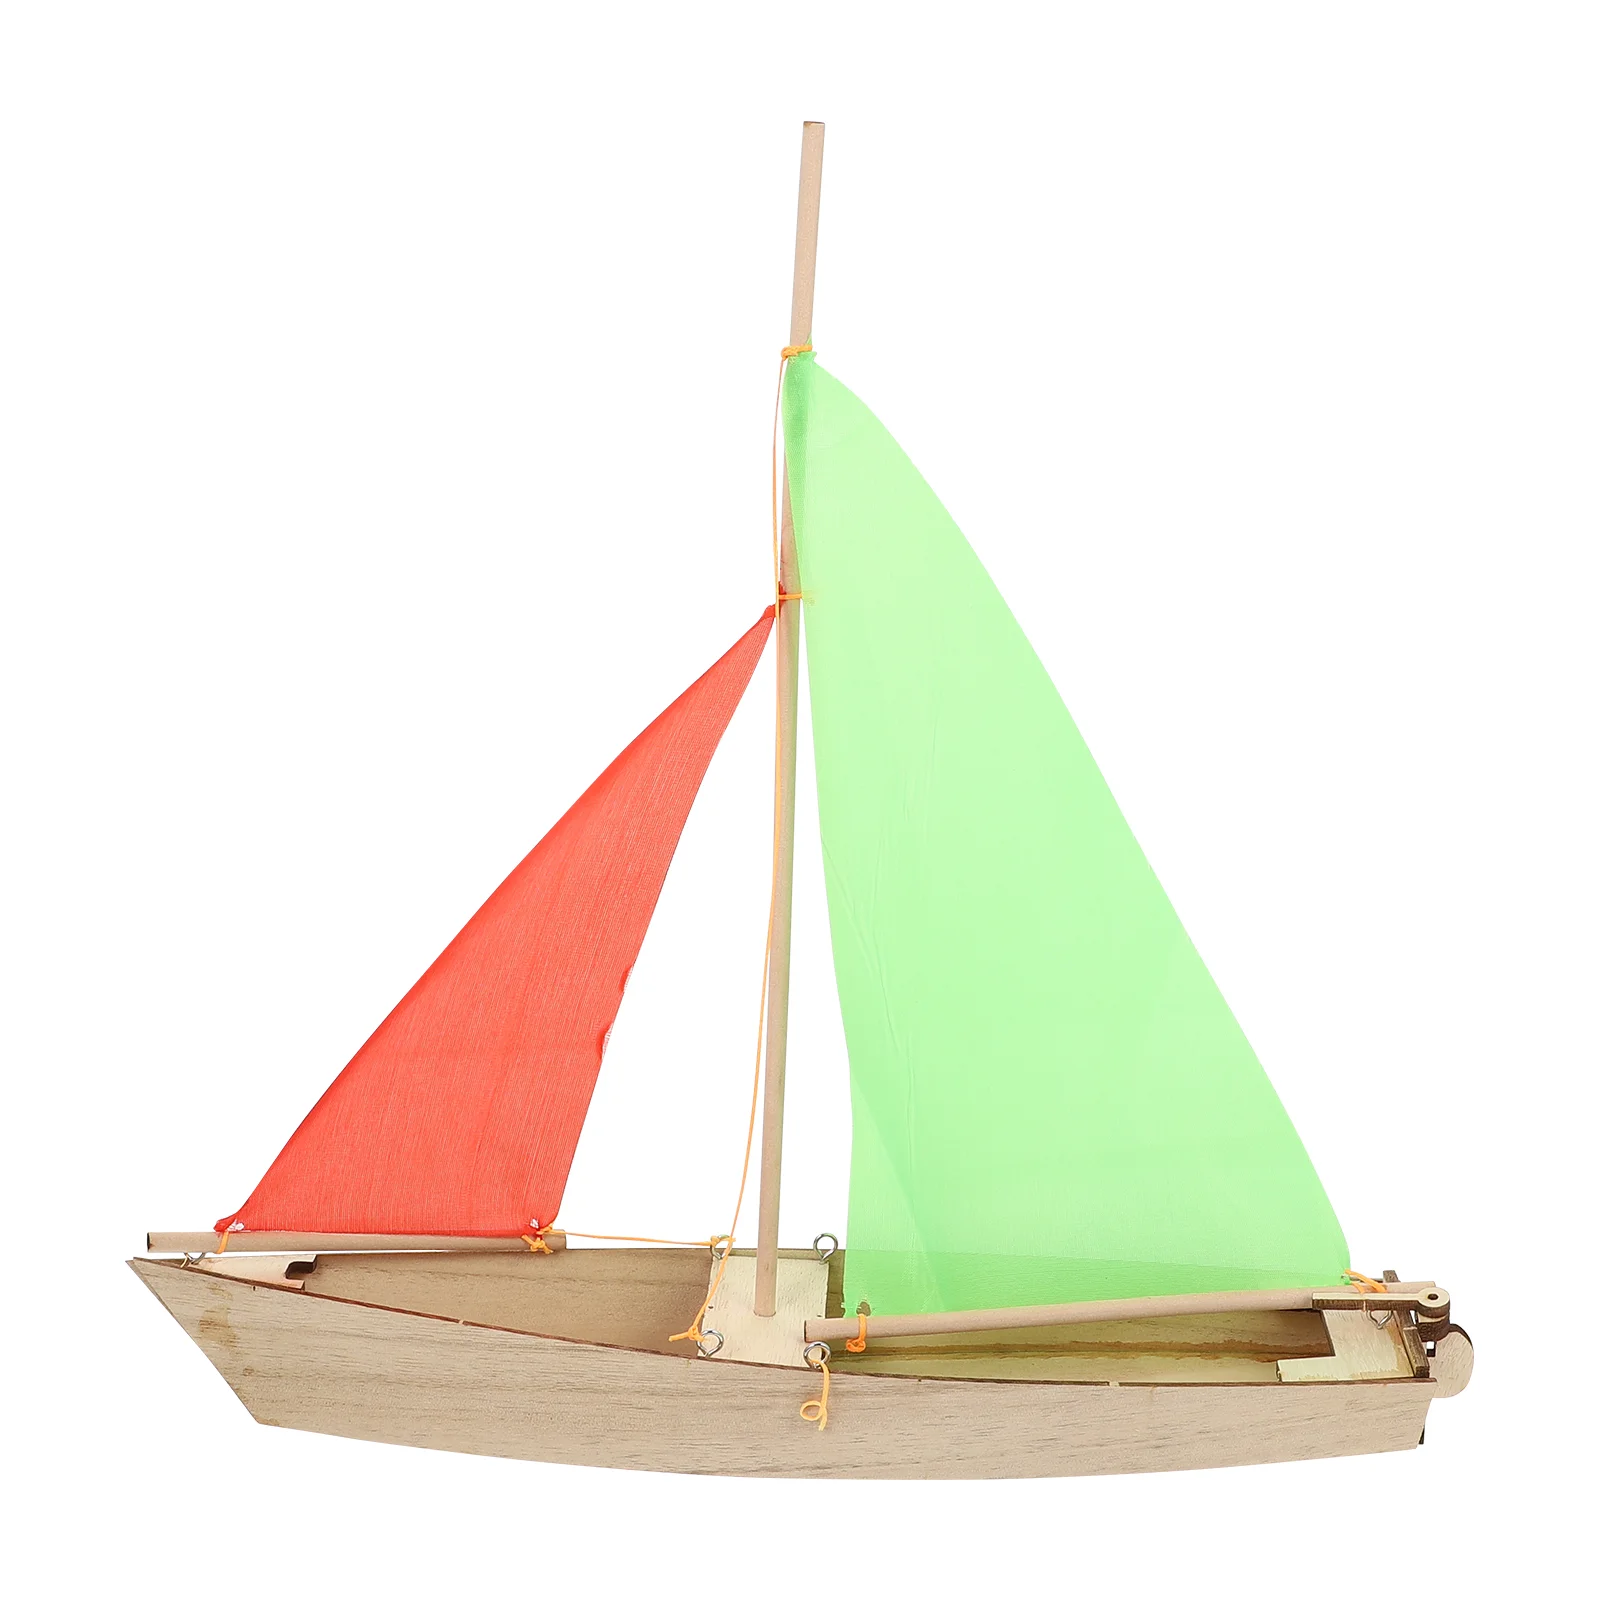 

Сборная модель парусного судна, игрушка «сделай сам», деревянная парусная лодка, сборные игрушки, деревянные обучающие игрушки